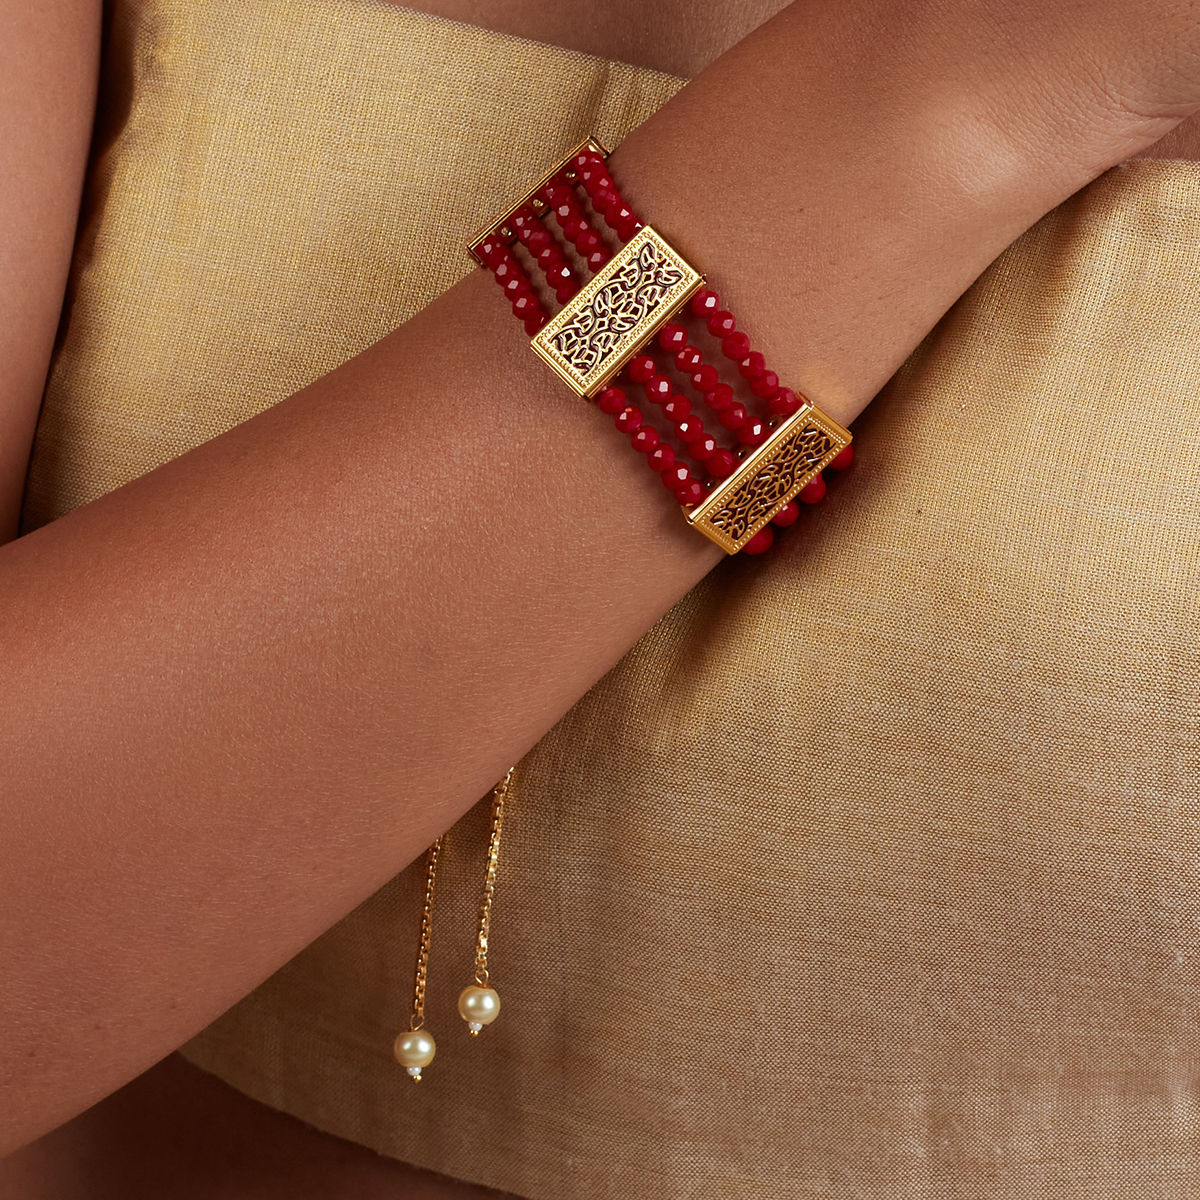 Details more than 84 red gold bracelet best